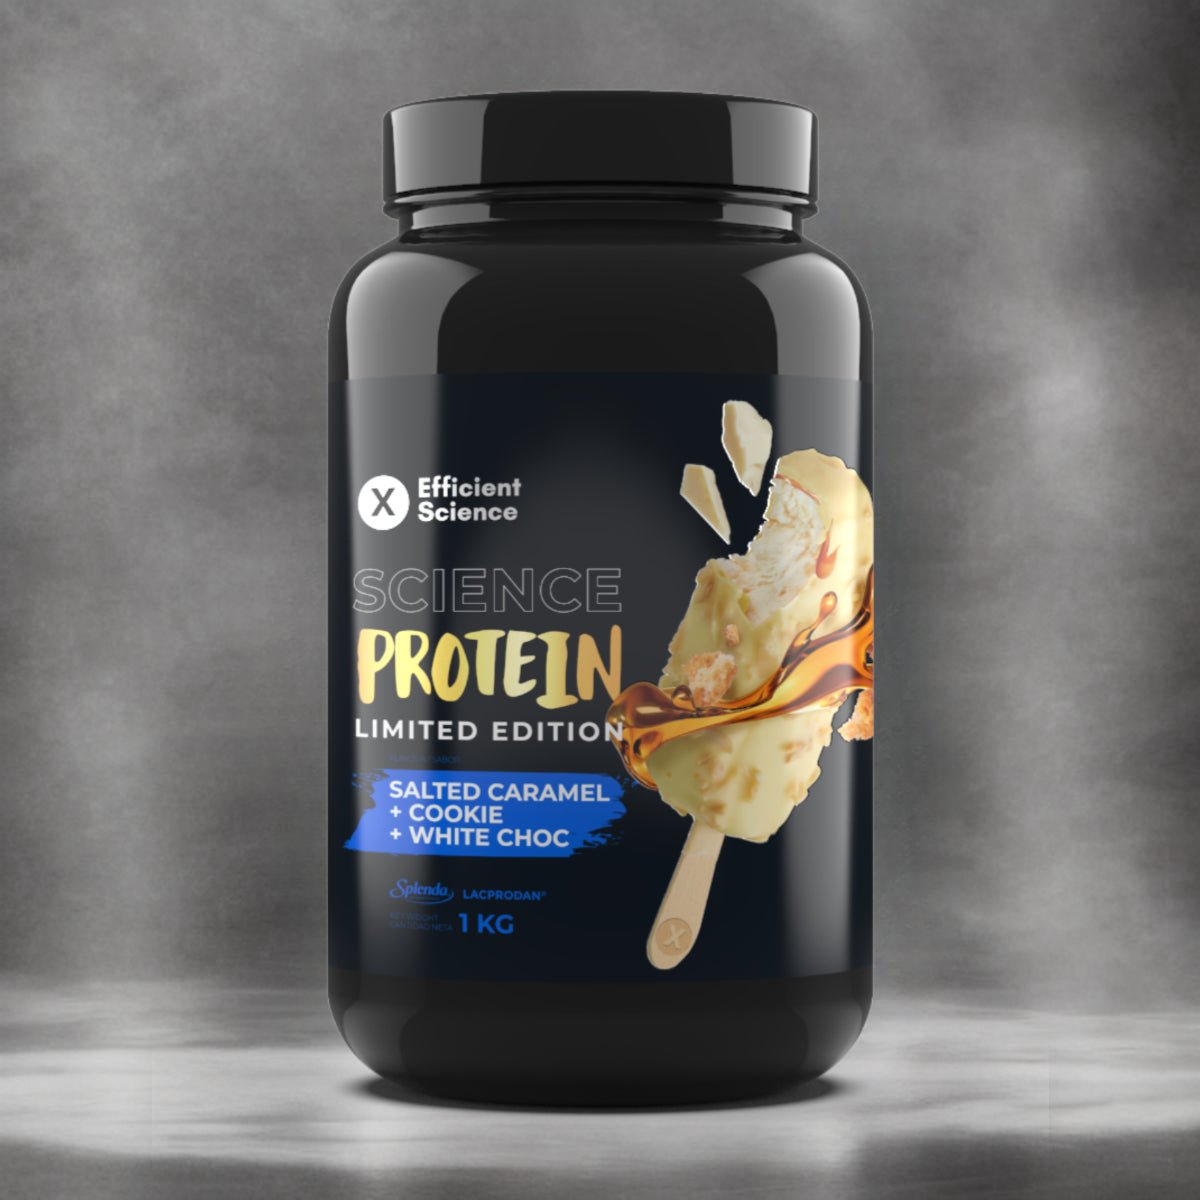 Science Protein 1kg Edición limitada - Efficient Science - EFFICIENT GROUP